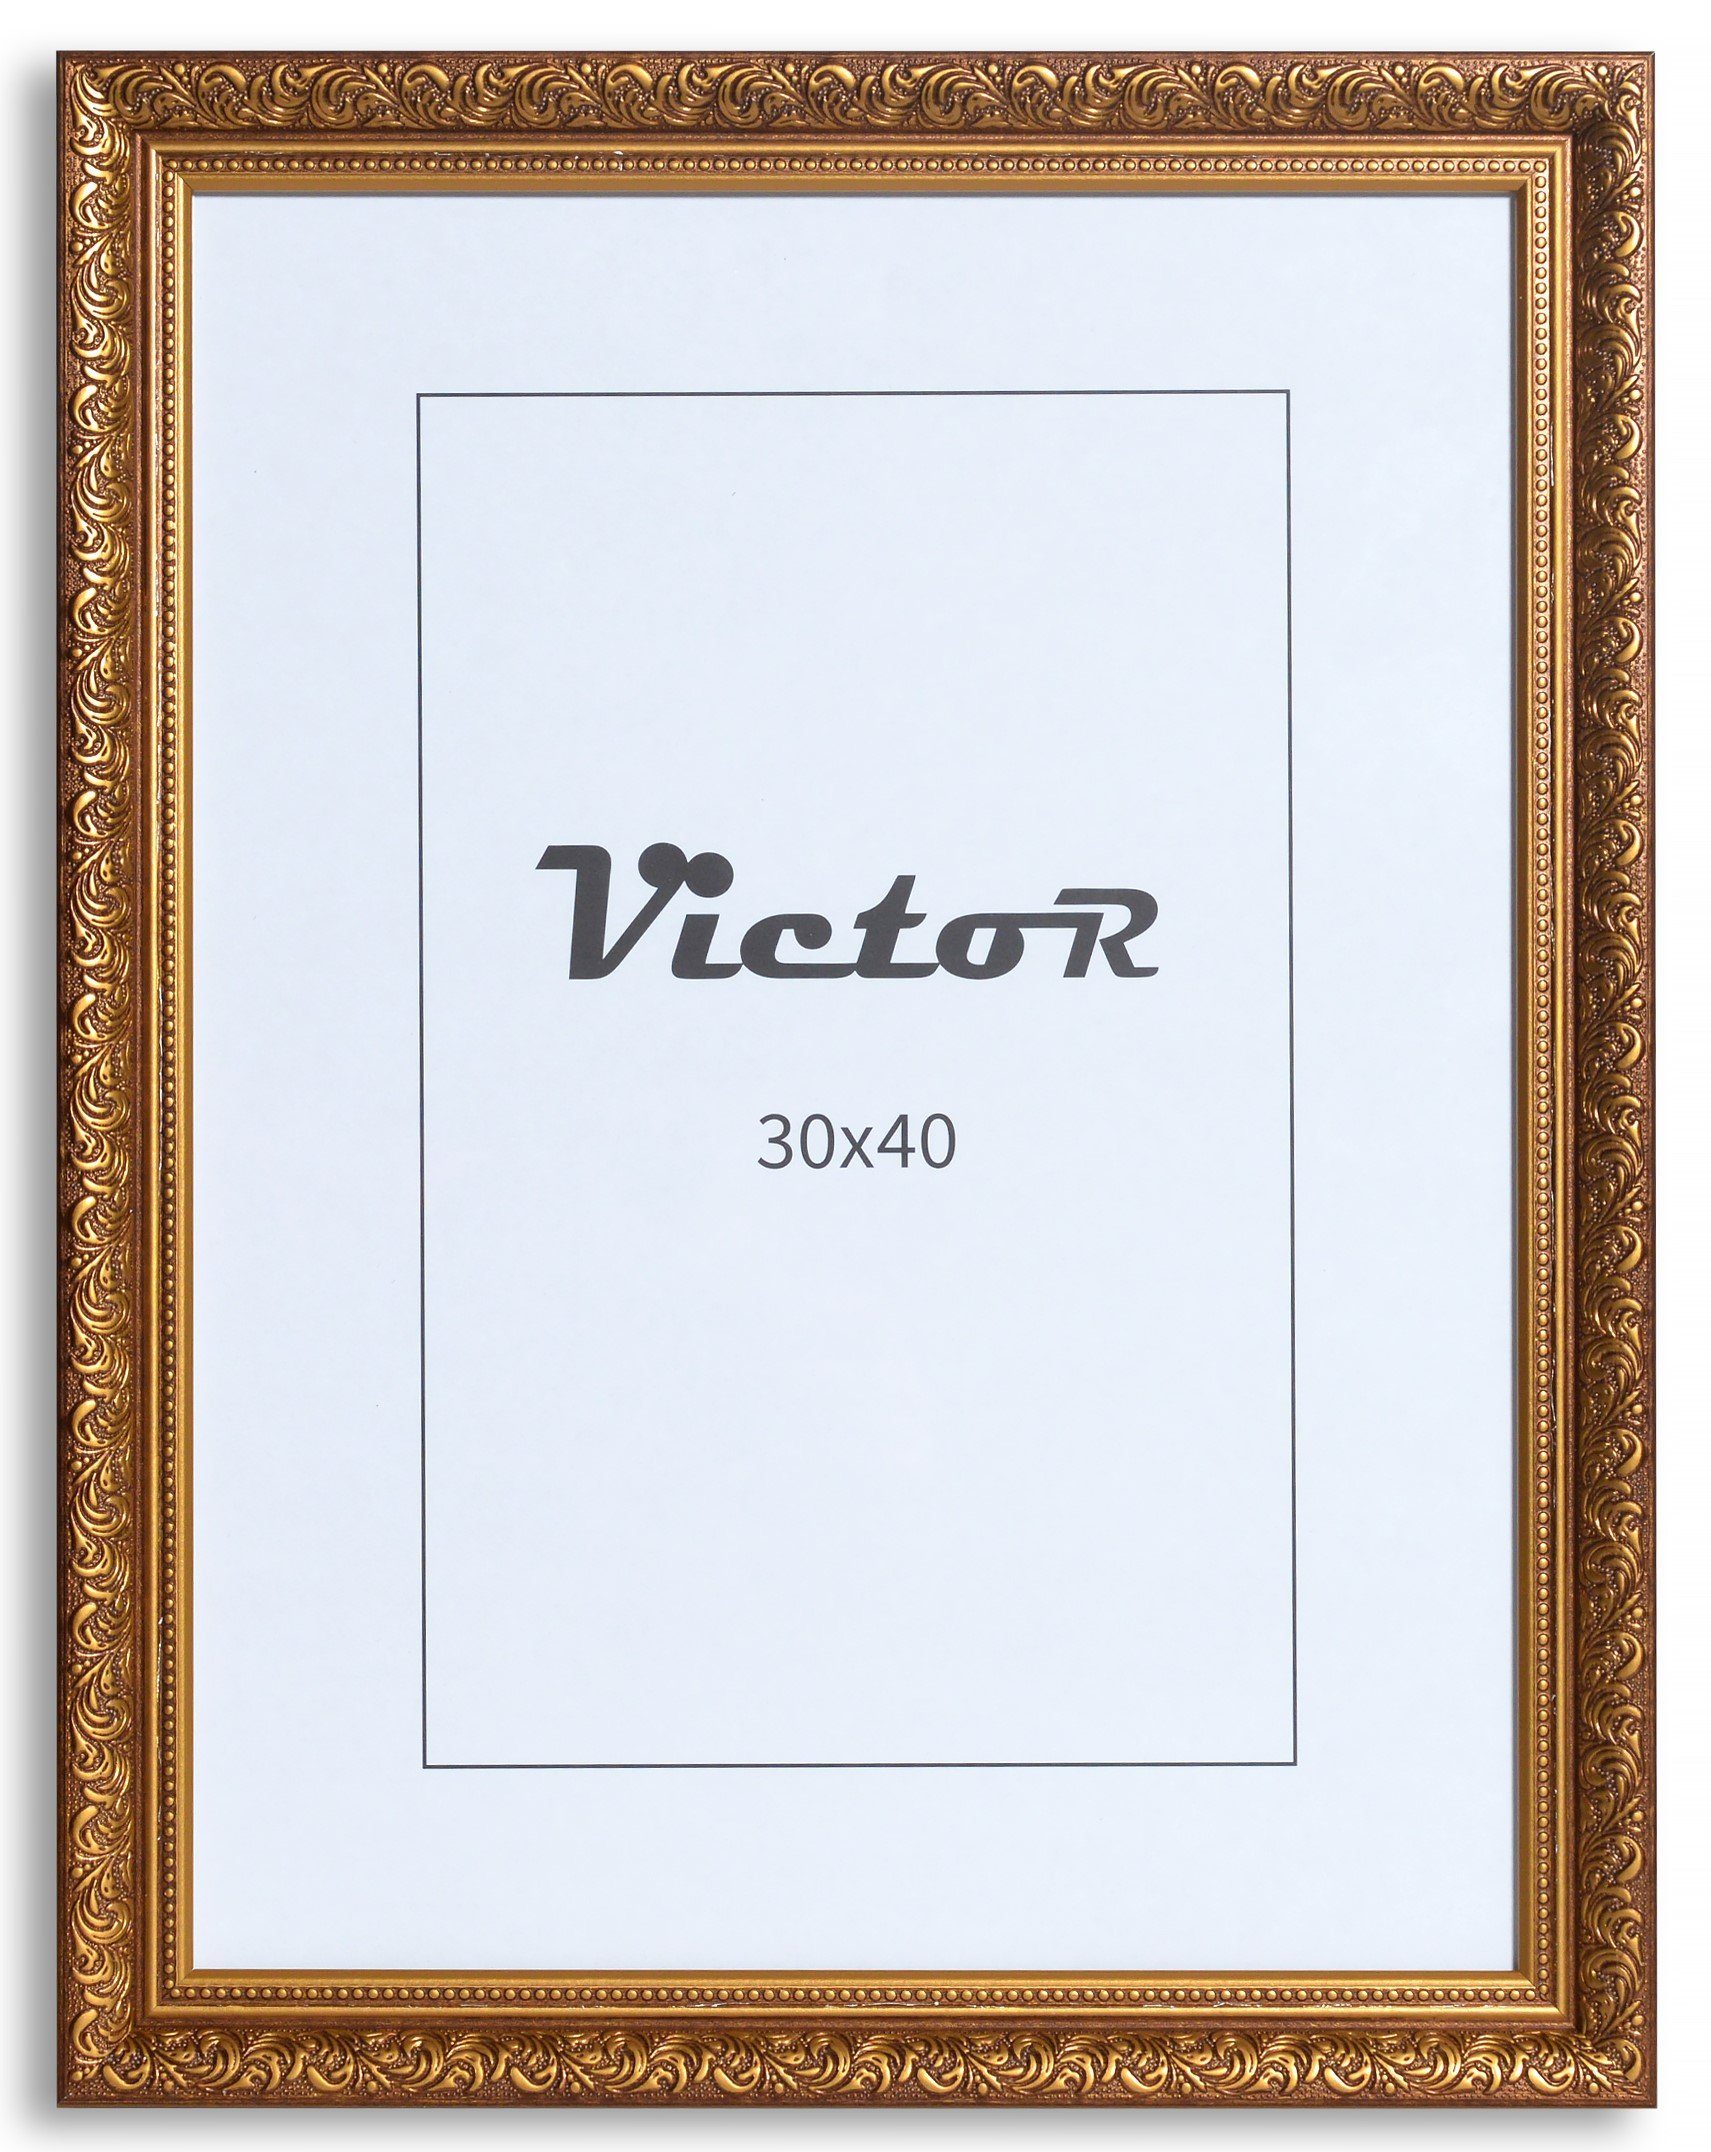 Victor (Zenith) Рамки Рамки \"Rubens\" - Farbe: Braun Gold - Größe: 30 x 40 cm, Рамки Set 30x40 cm Braun Gold A3, Рамки Barock, Antik